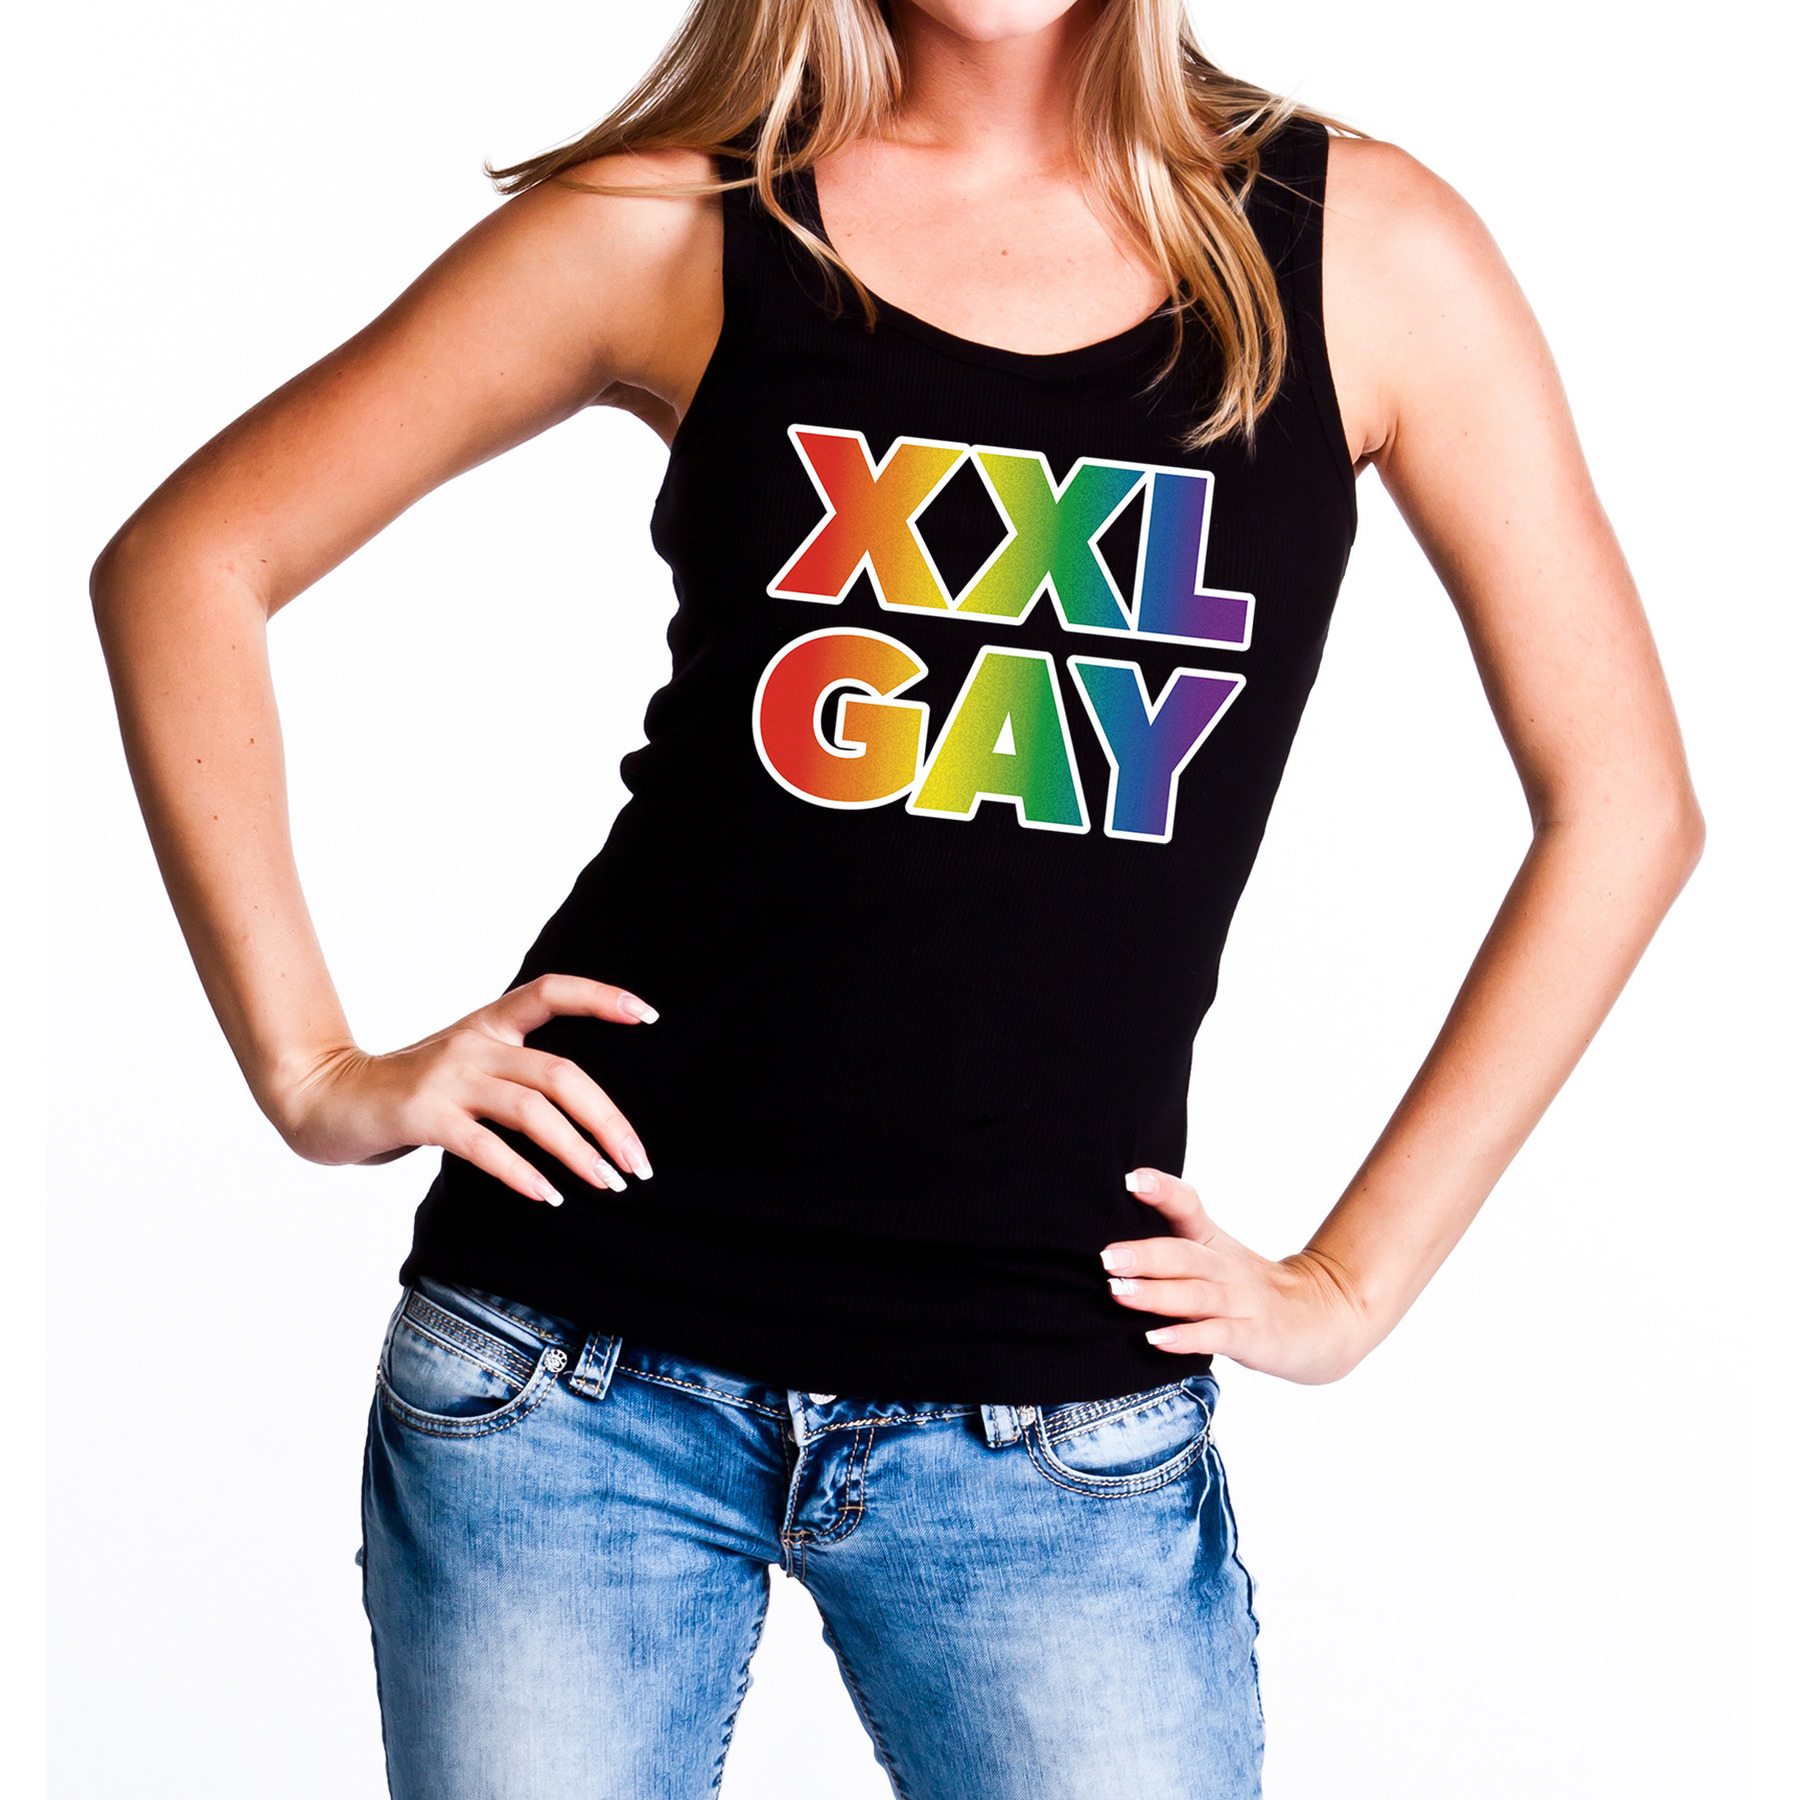 Regenboog gay pride - parade XXL Gay zwarte tanktop voor dames - LHBT evenement tanktops kleding